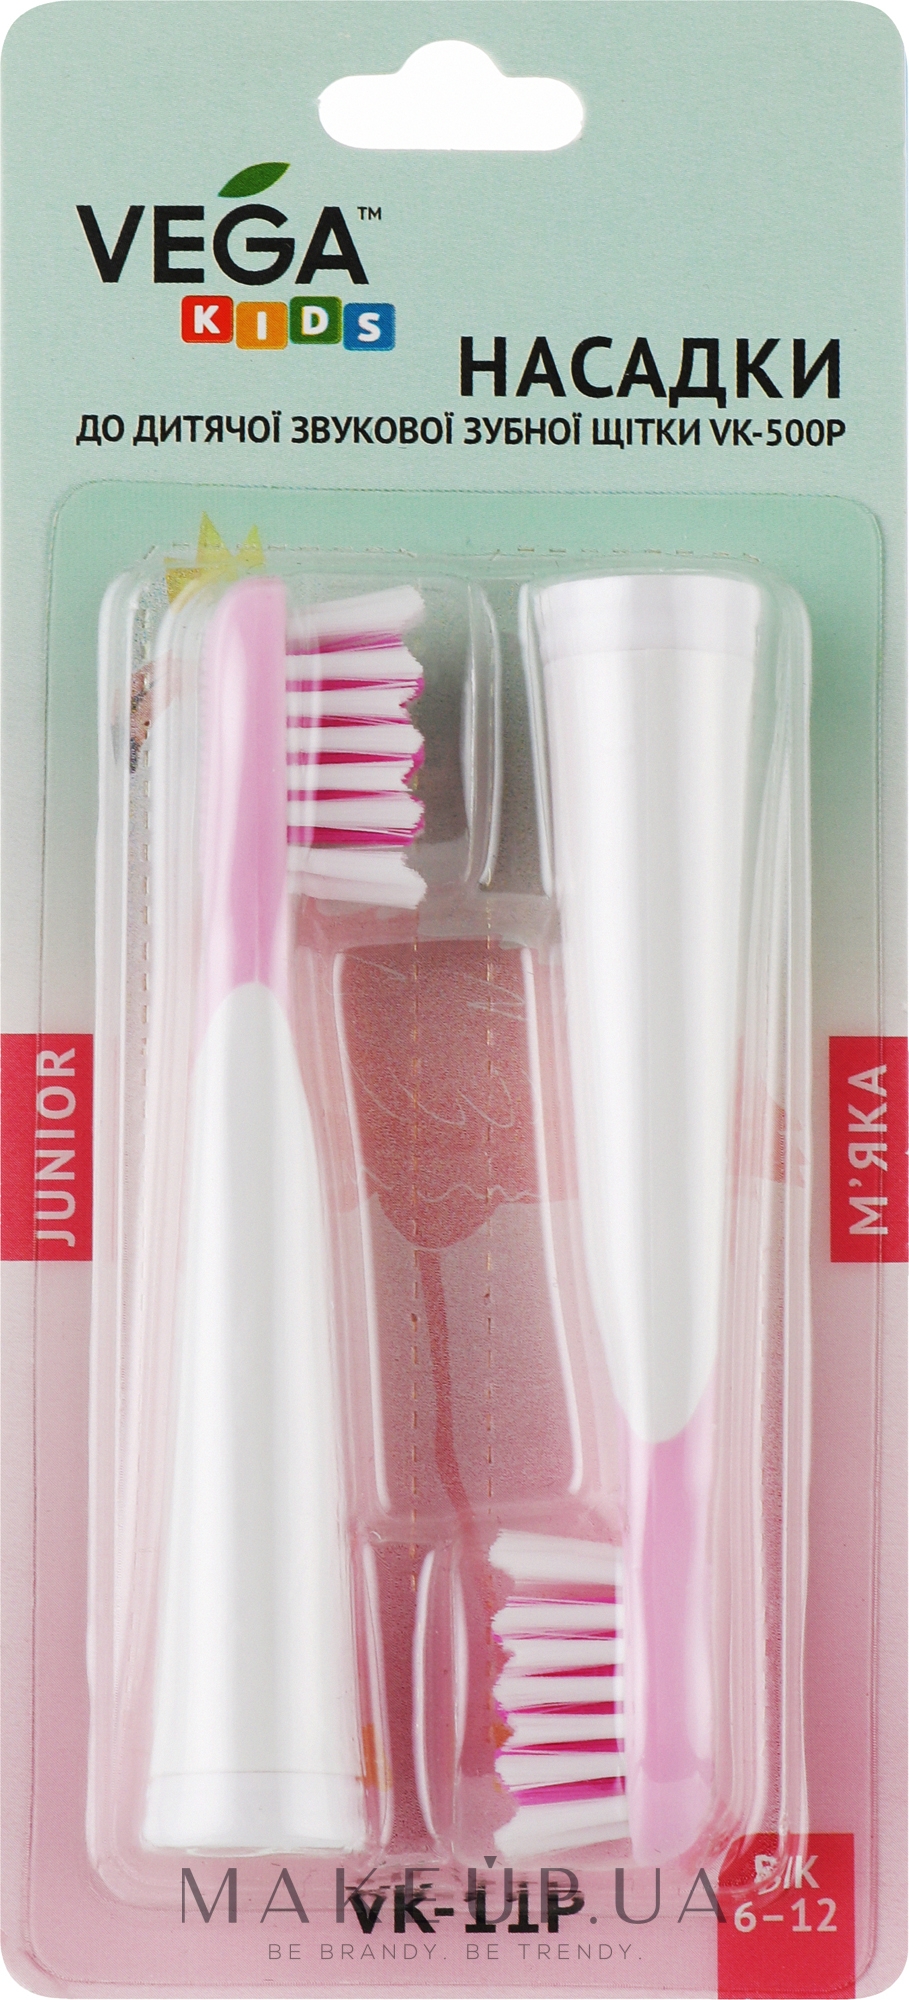 Насадки для дитячої звукової зубної щітки, VK-11P, рожеві         - Vega Kids — фото 2шт